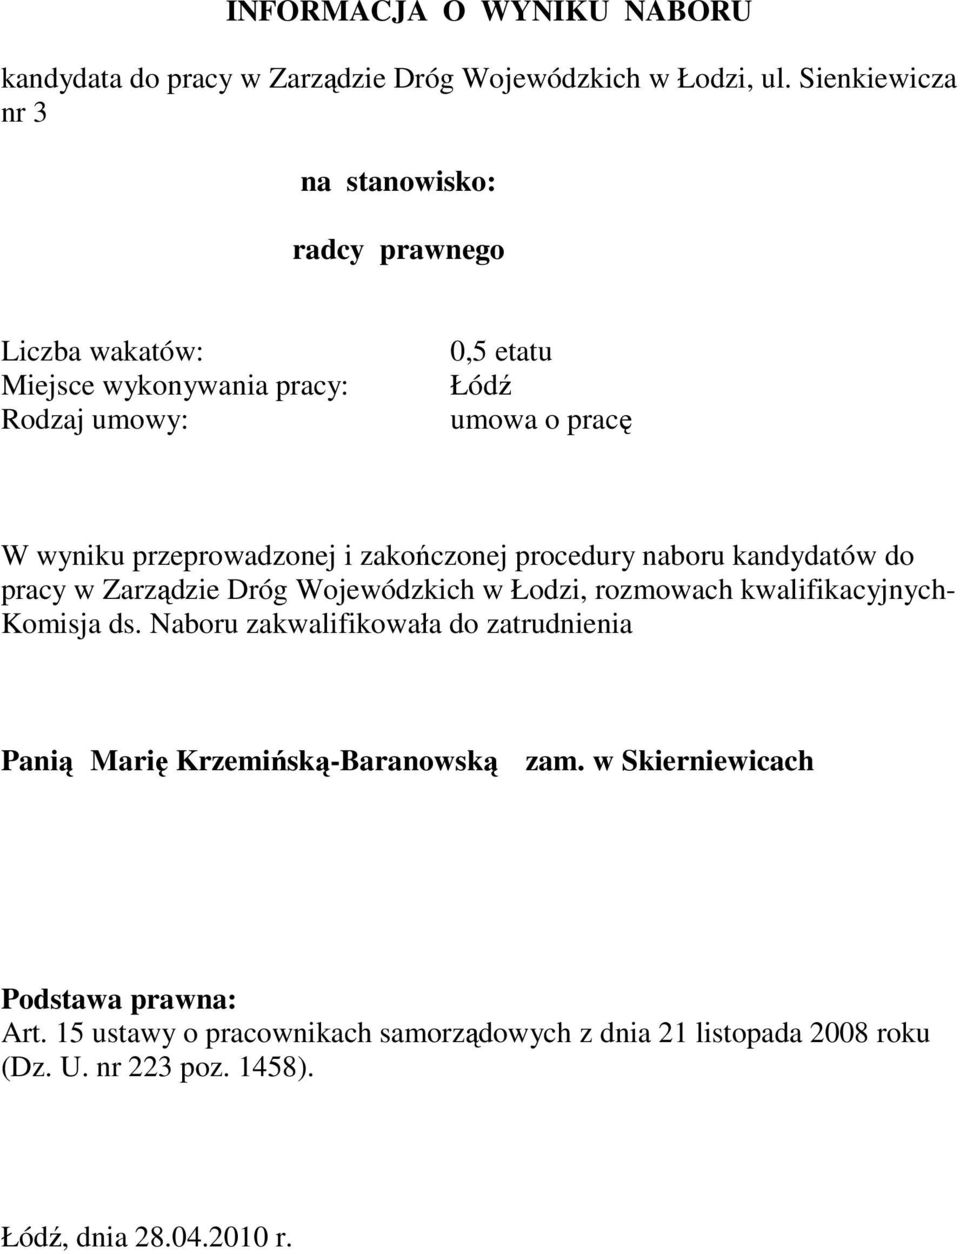 zakończonej procedury naboru kandydatów do pracy w Zarządzie Dróg Wojewódzkich w Łodzi, rozmowach kwalifikacyjnych- Komisja ds.